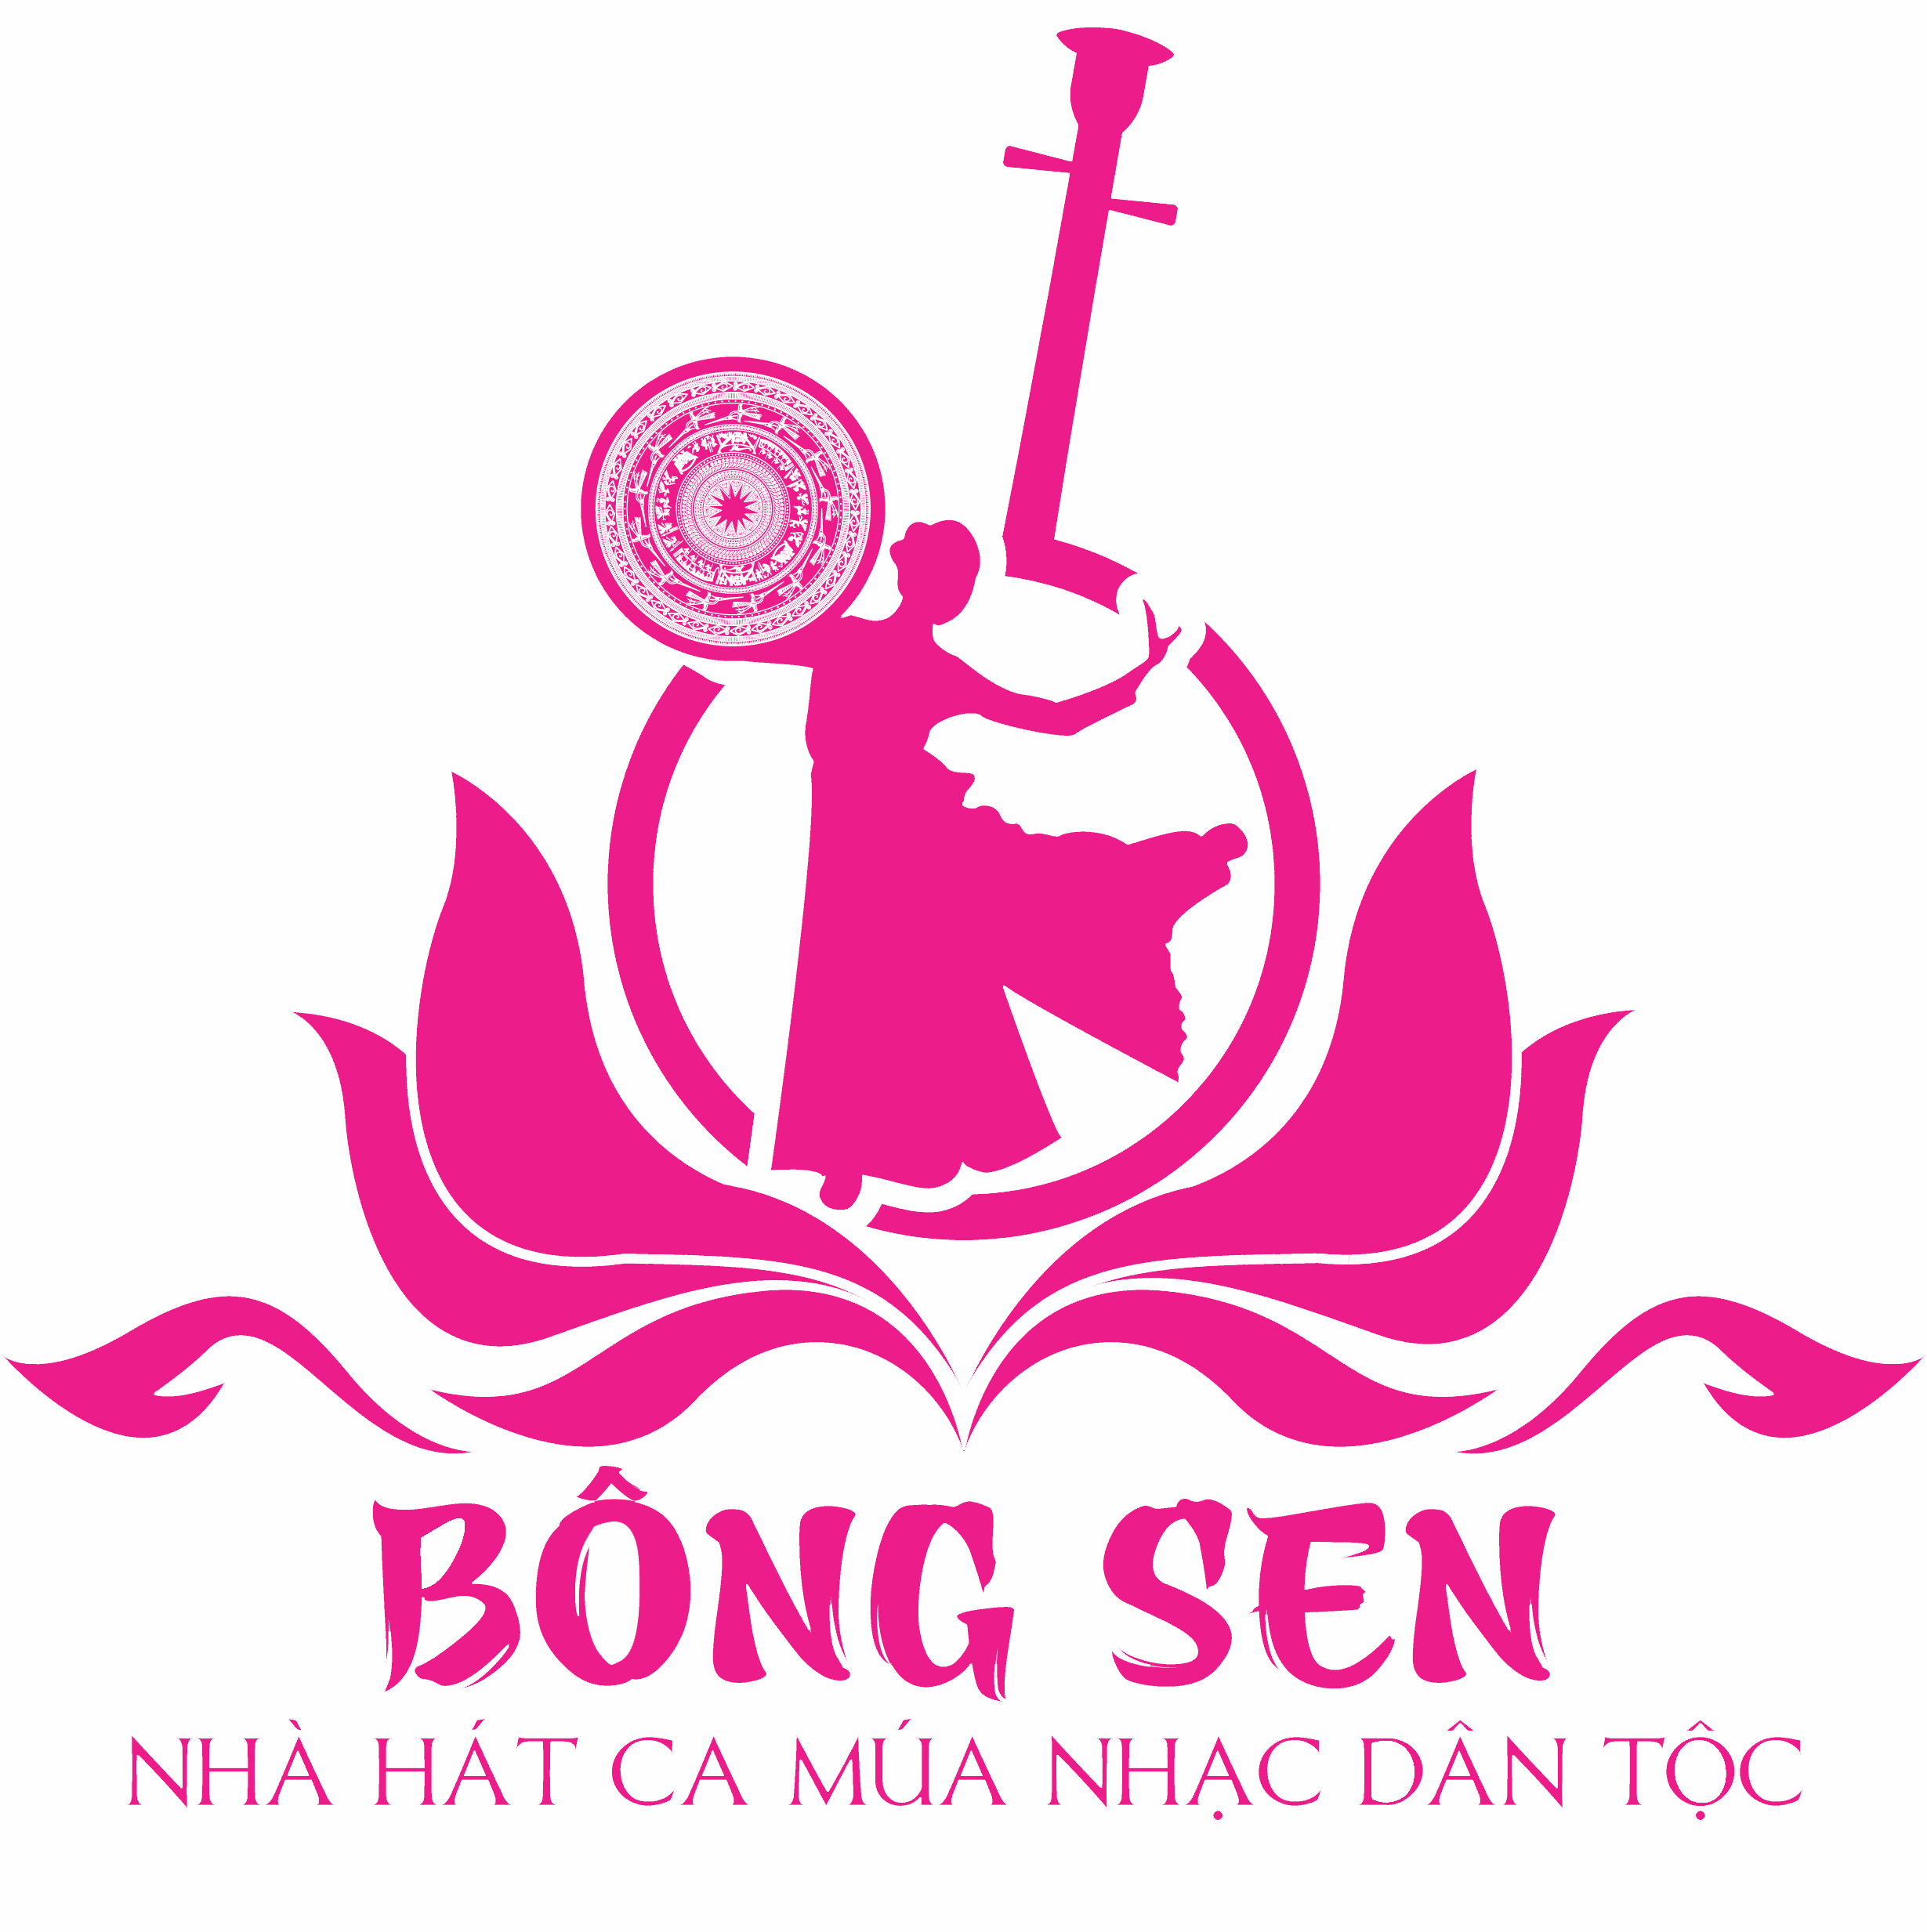 Nhà hát ca múa nhạc dân tộc Bông Sen